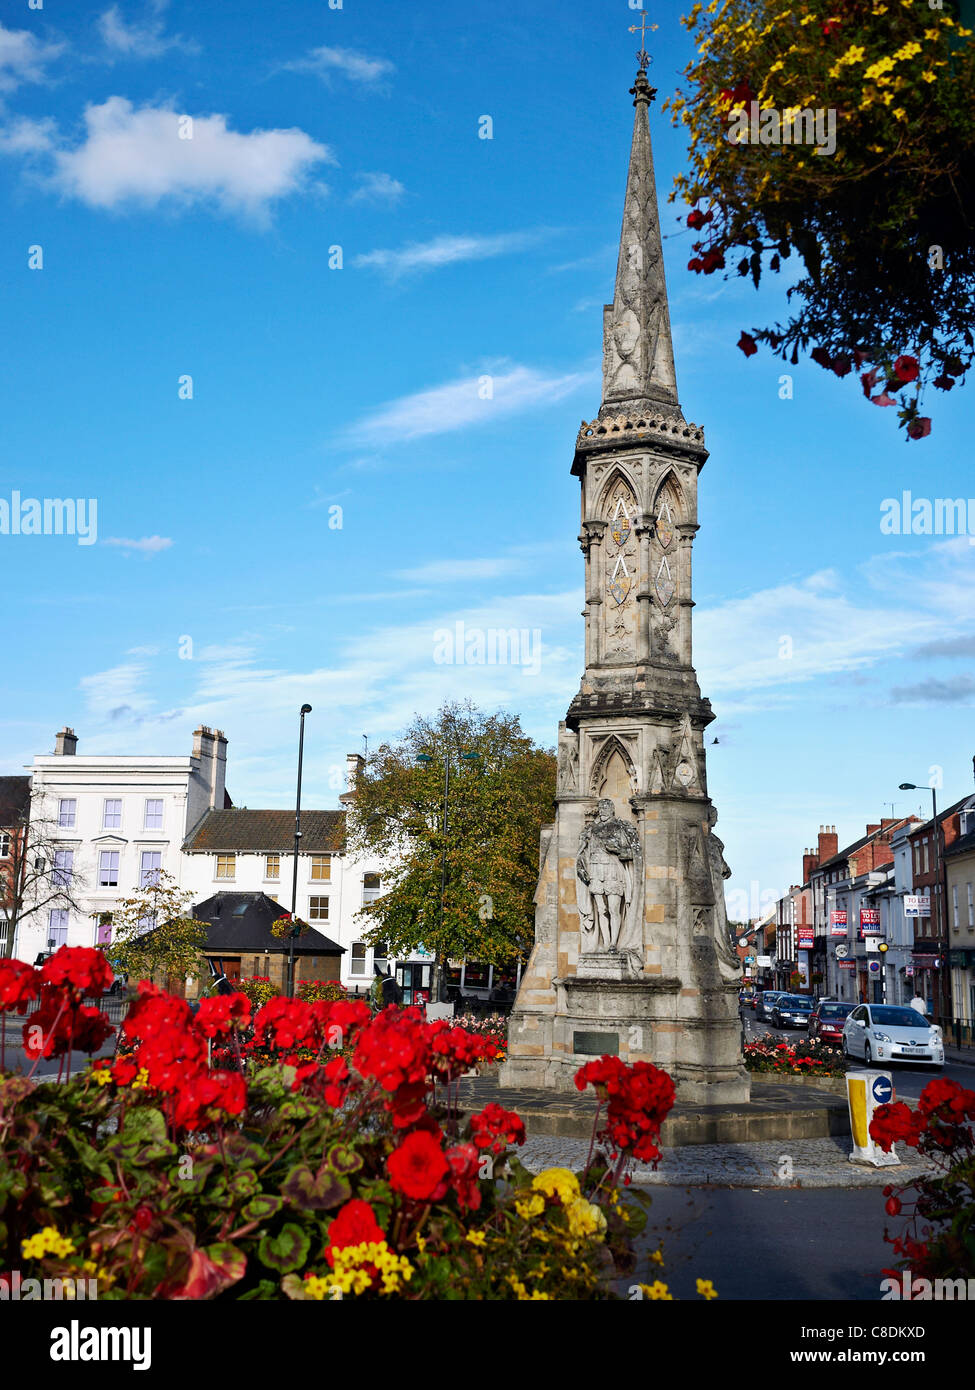 Banbury Cross monument. Oxfordshire England UK Stock Photo